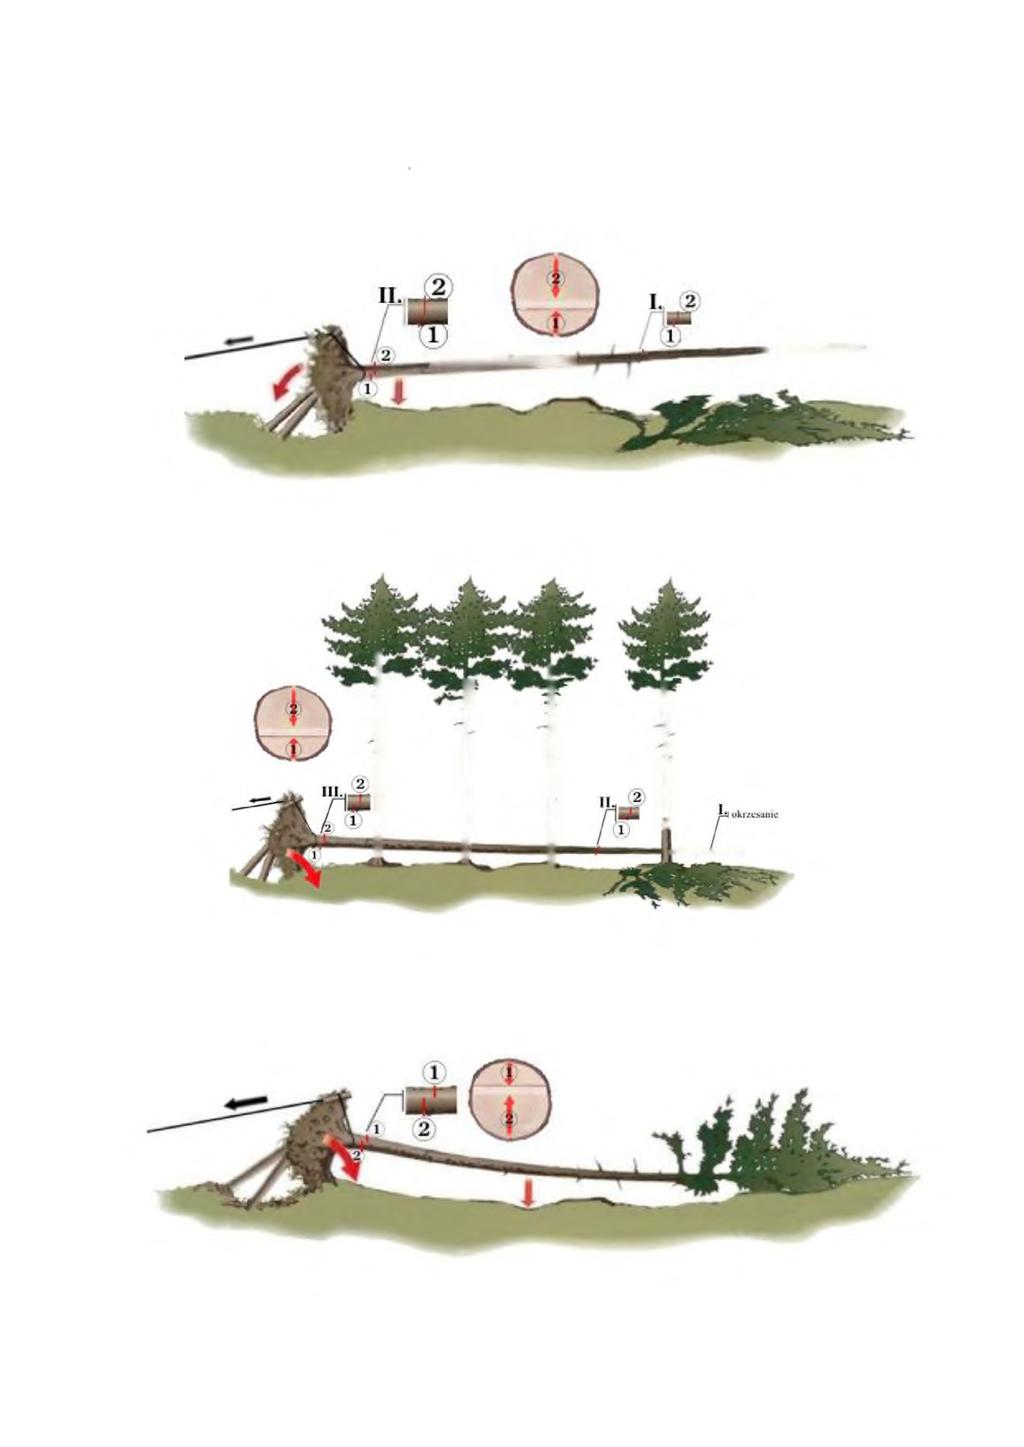 2. Przy cięciu drewna wykazującego małe naprężenia należy stosować dwa rzazy, przy czym: a) jeżeli drugi rzaz (kończący cięcie) wypada od